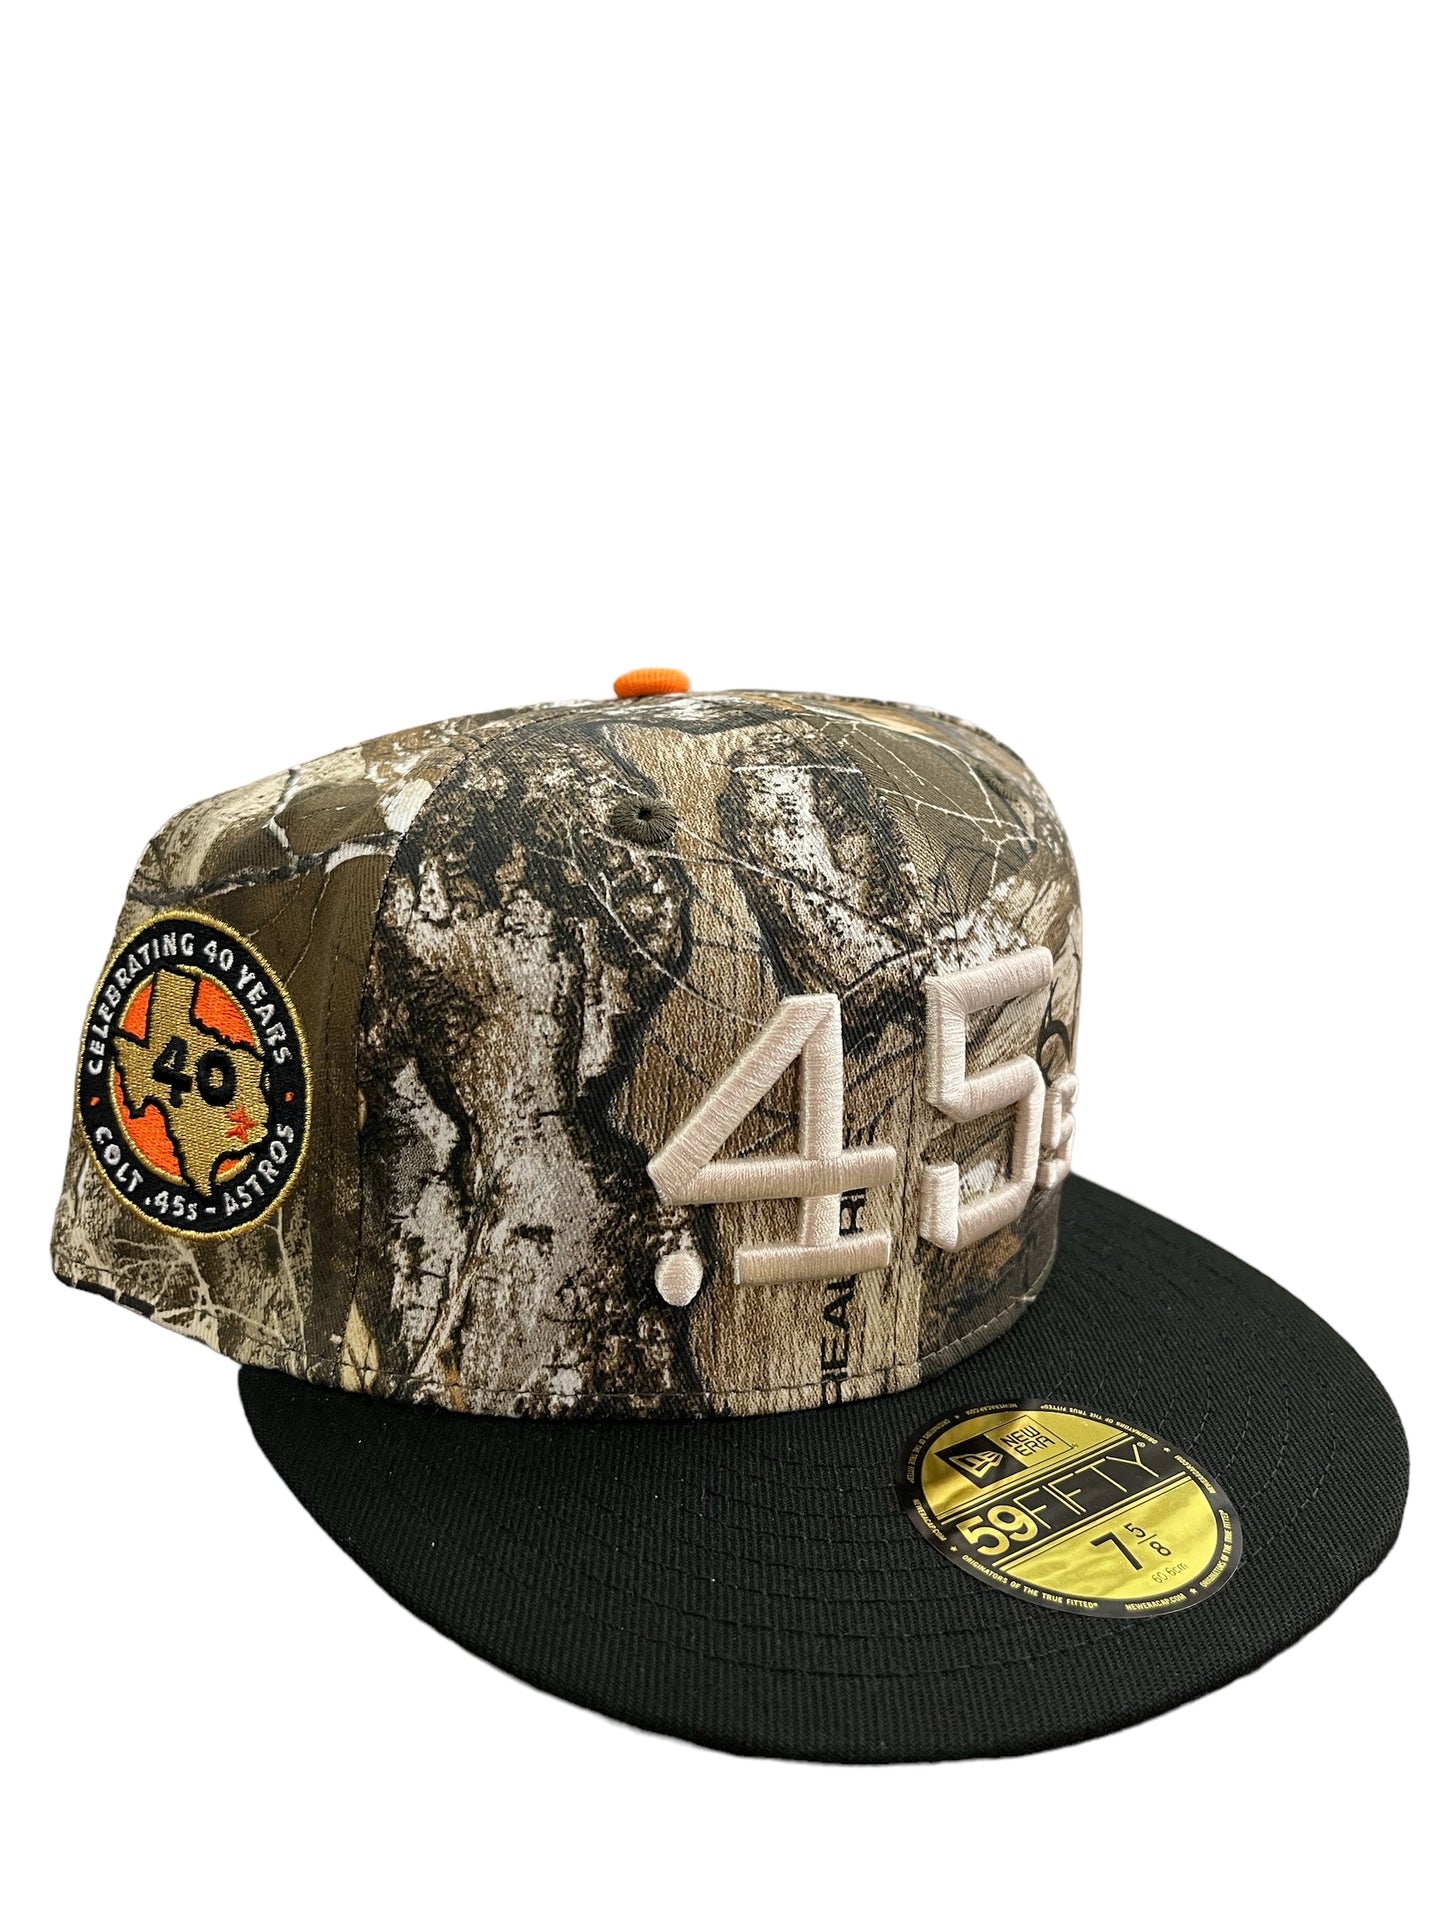 Houston Astros “45s Camo” Hat